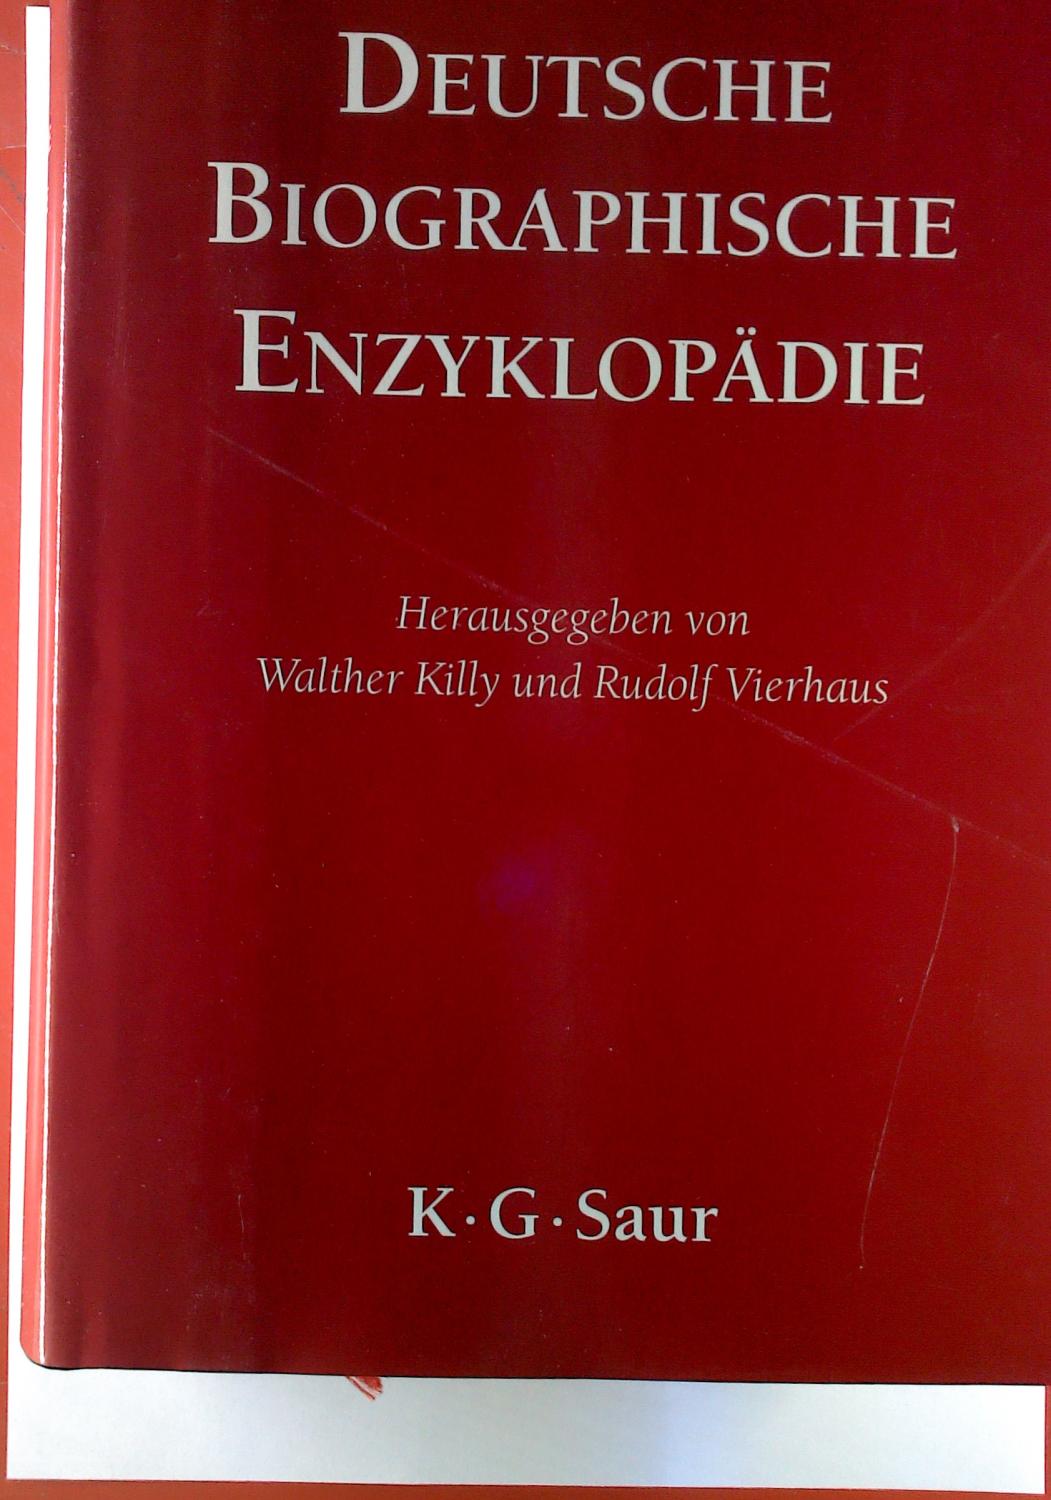 Deutsche biographische Enzyklopädie. Band 4, Gies - Hessel. - Walther Killy, Rudolf Vierhaus